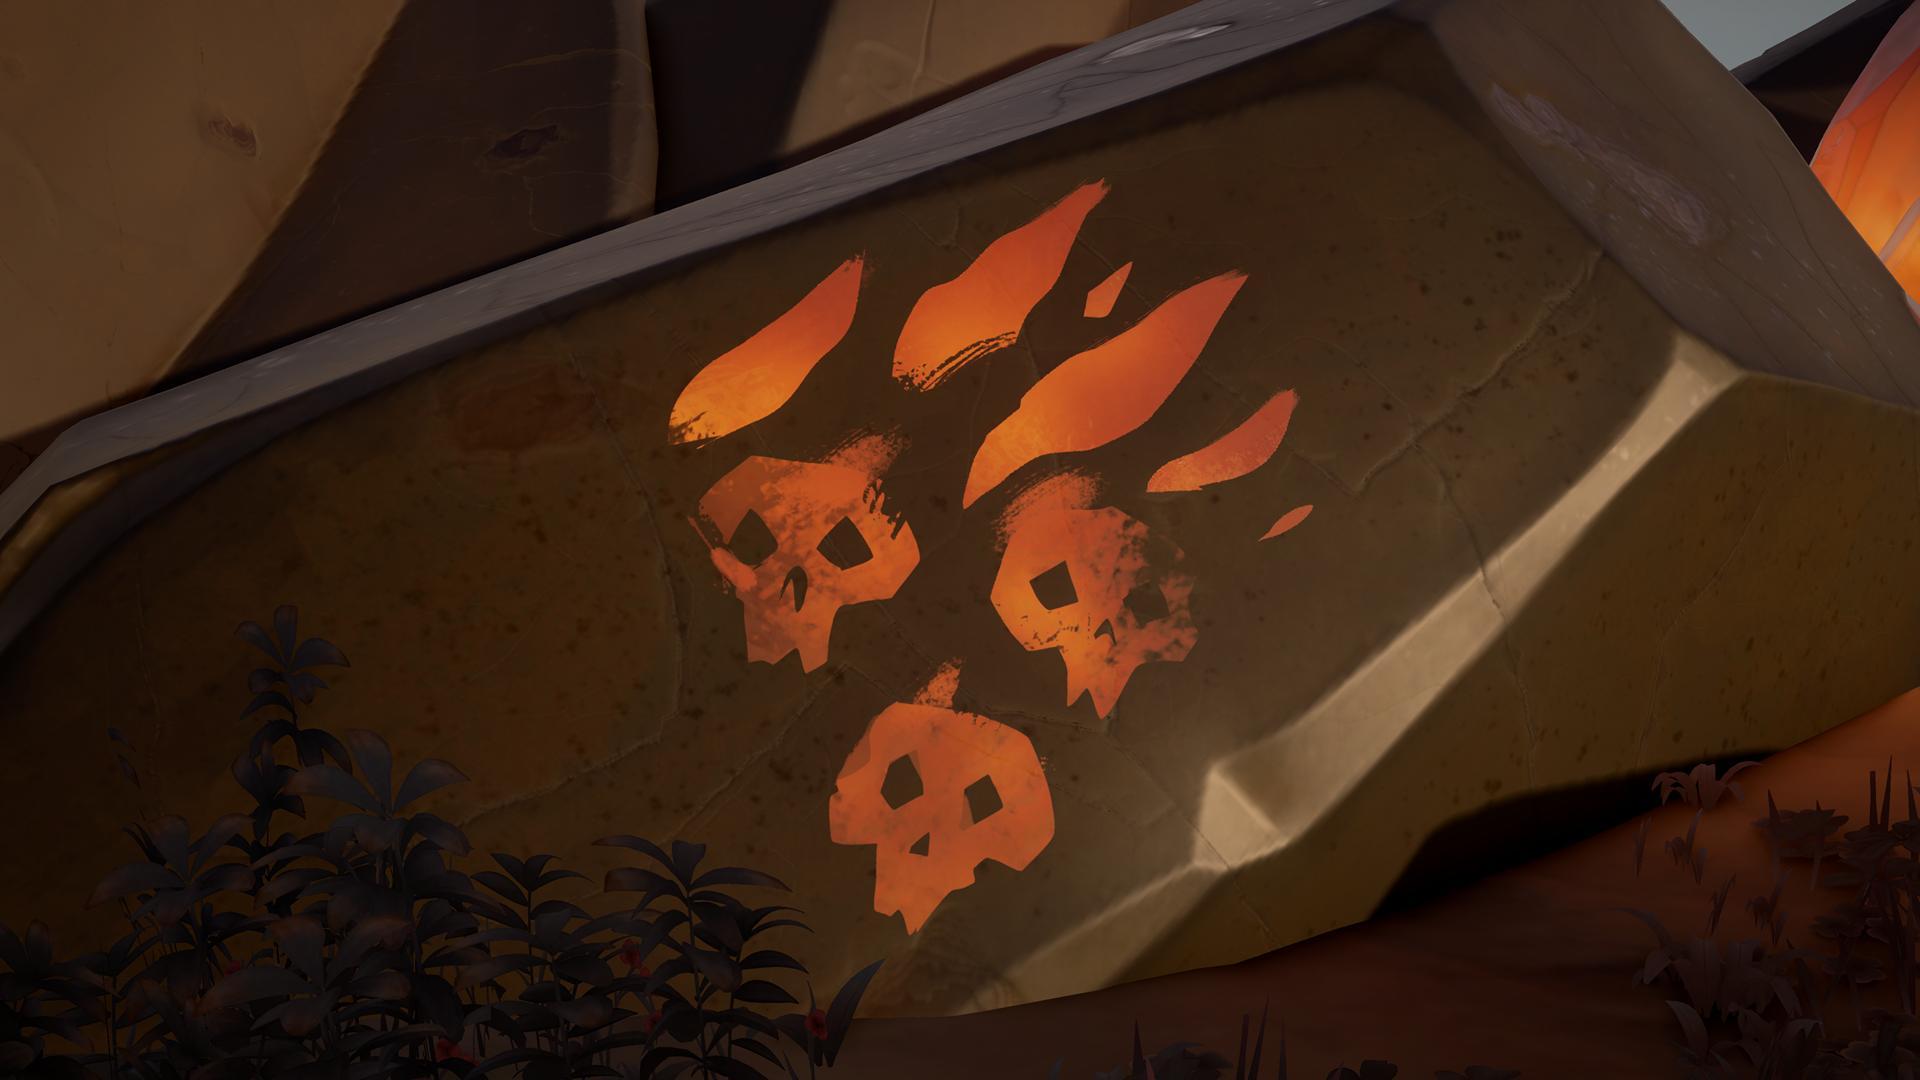 Three Skulls